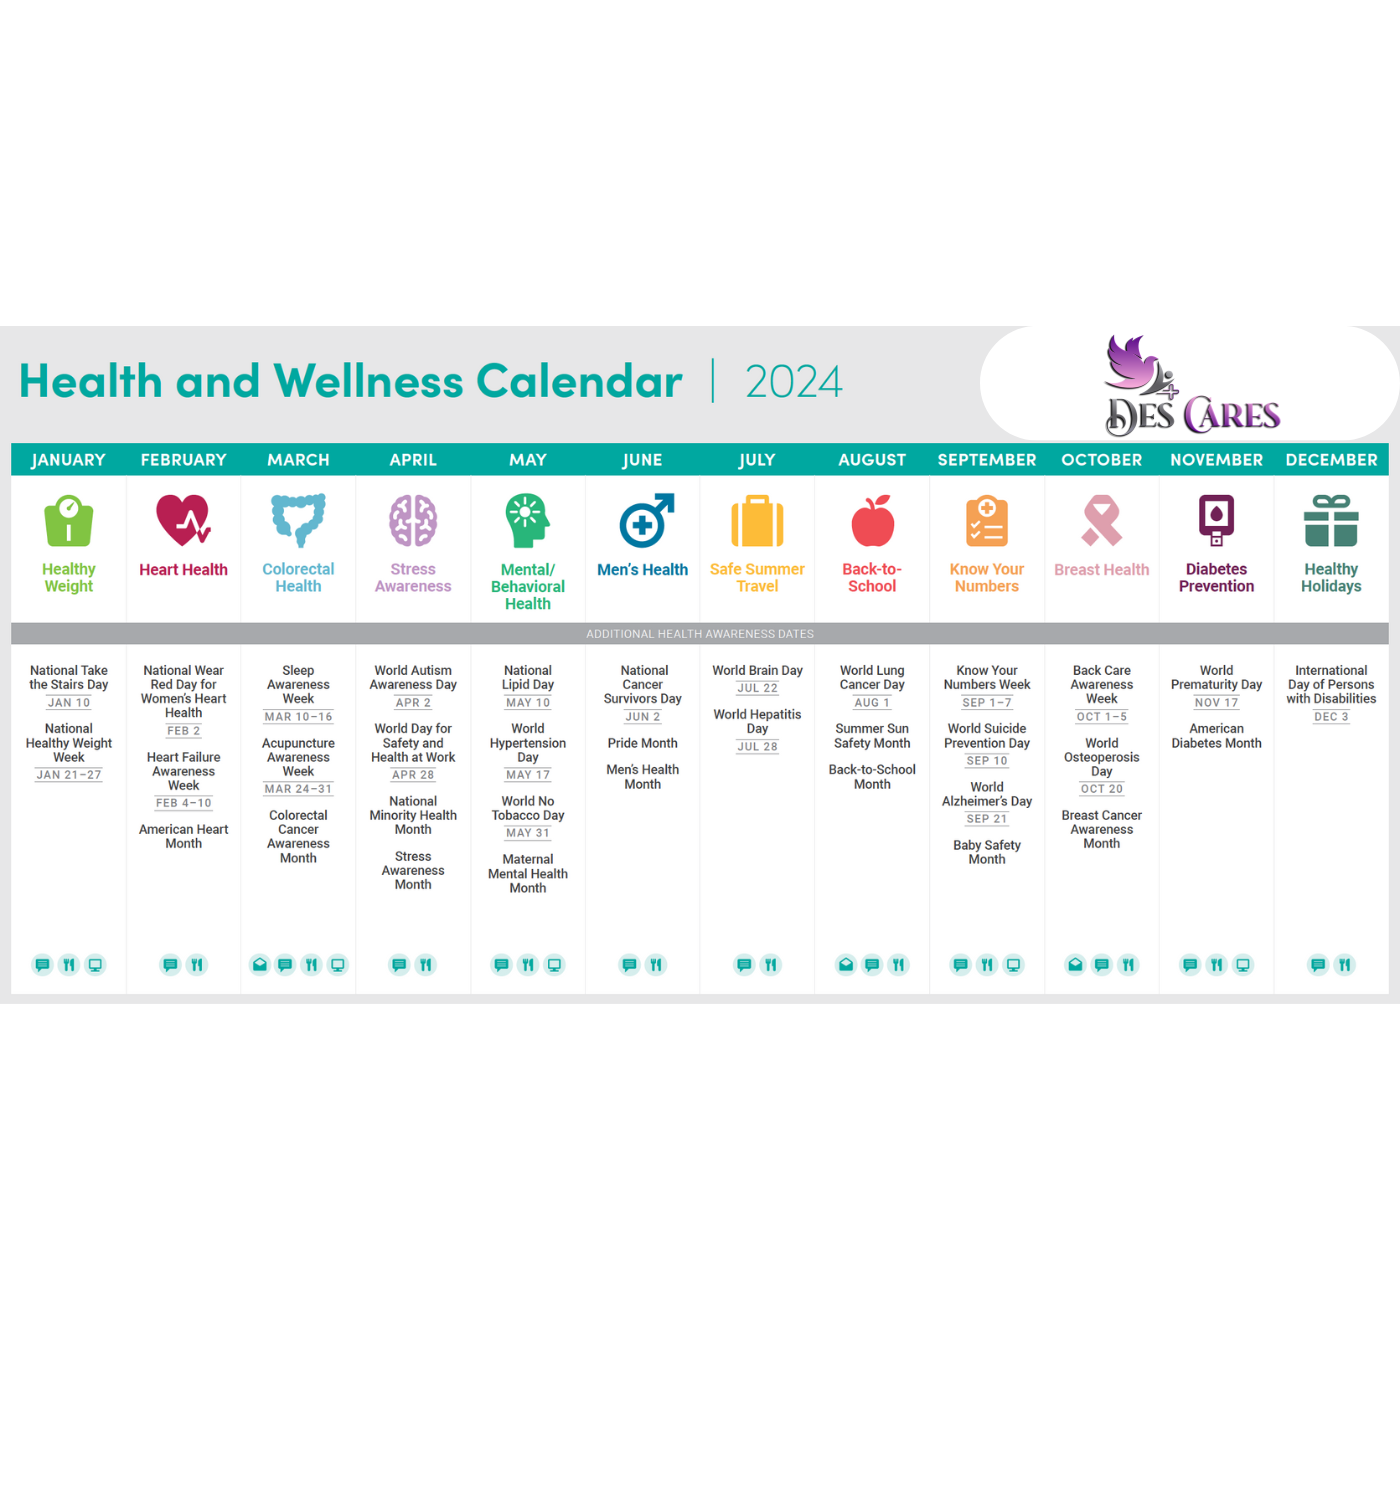 DES Cares Primary Care Concierge health & wellness Calendar